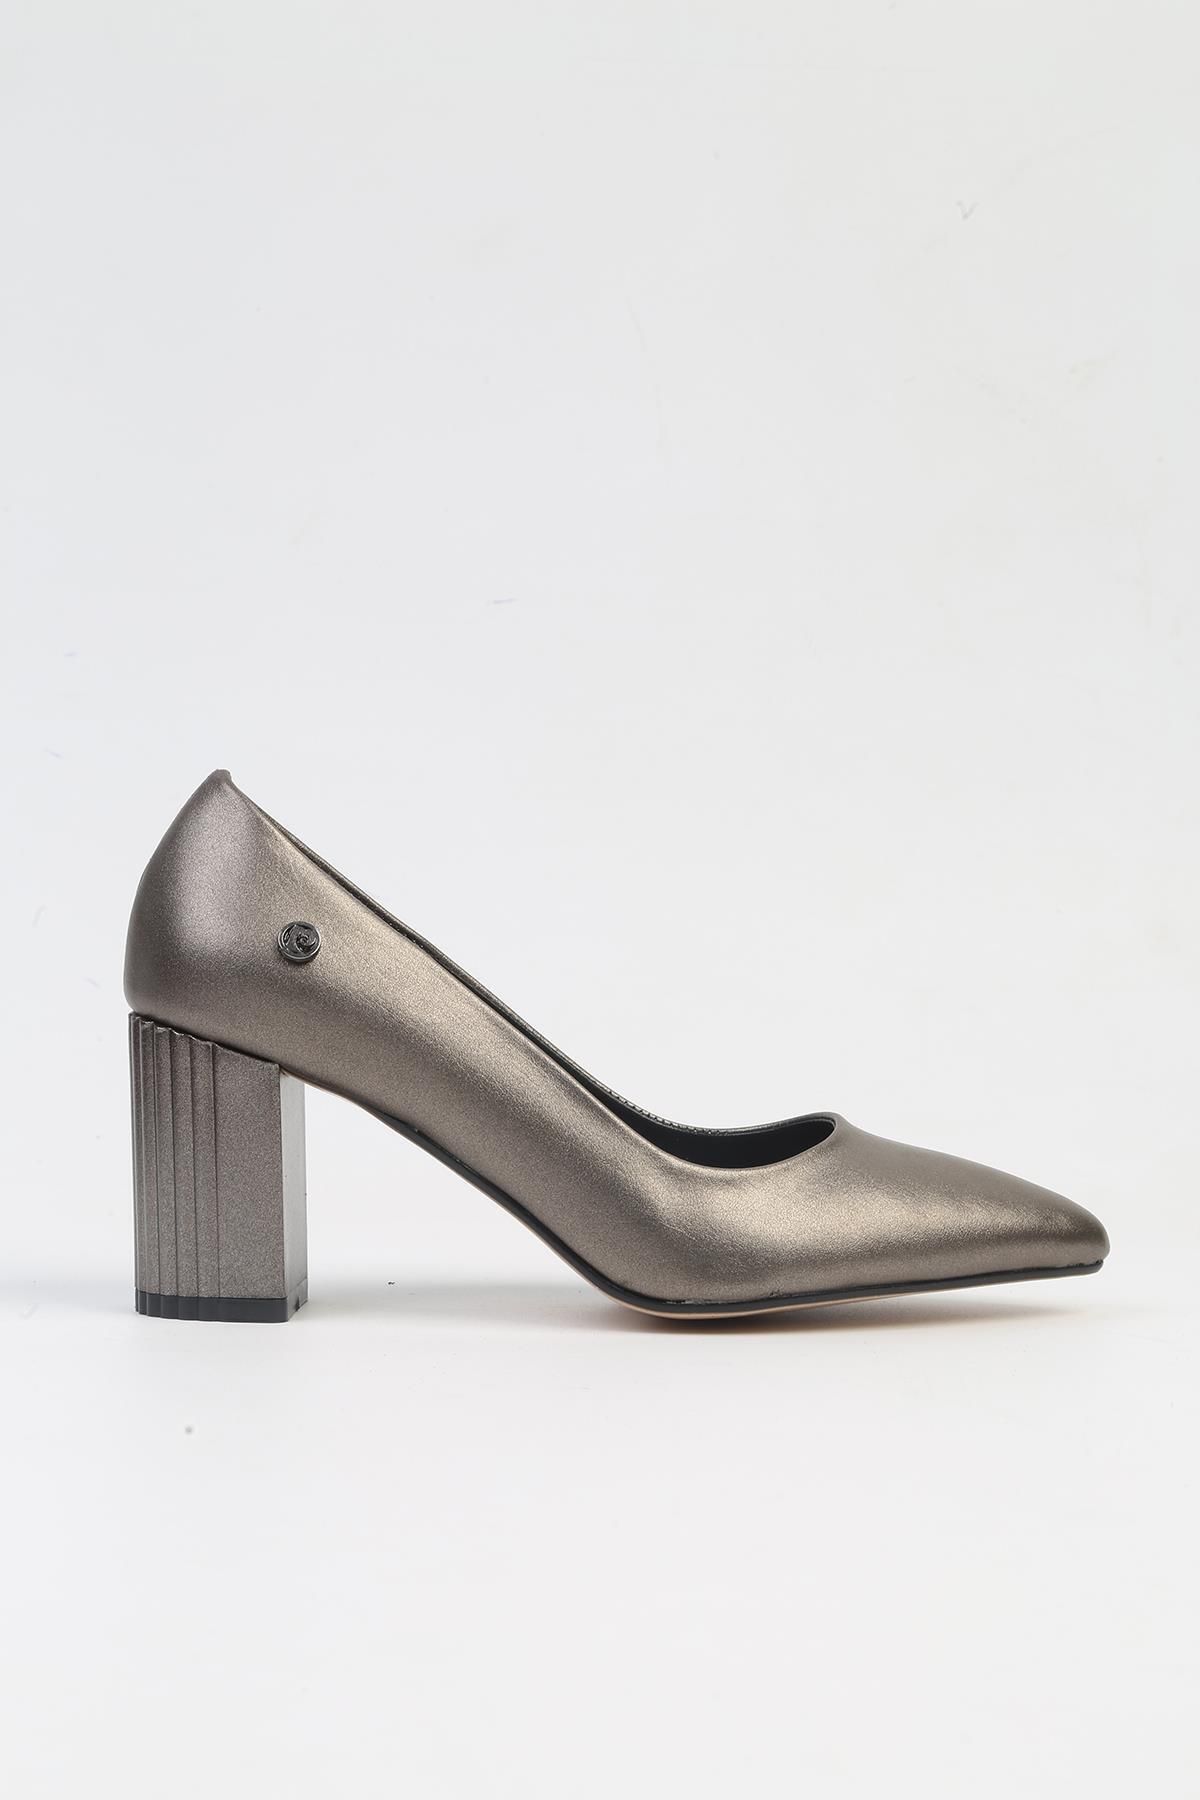 Pierre Cardin ® | PC-52574 - 3478 Platin Cilt-Kadın Topuklu Ayakkabı